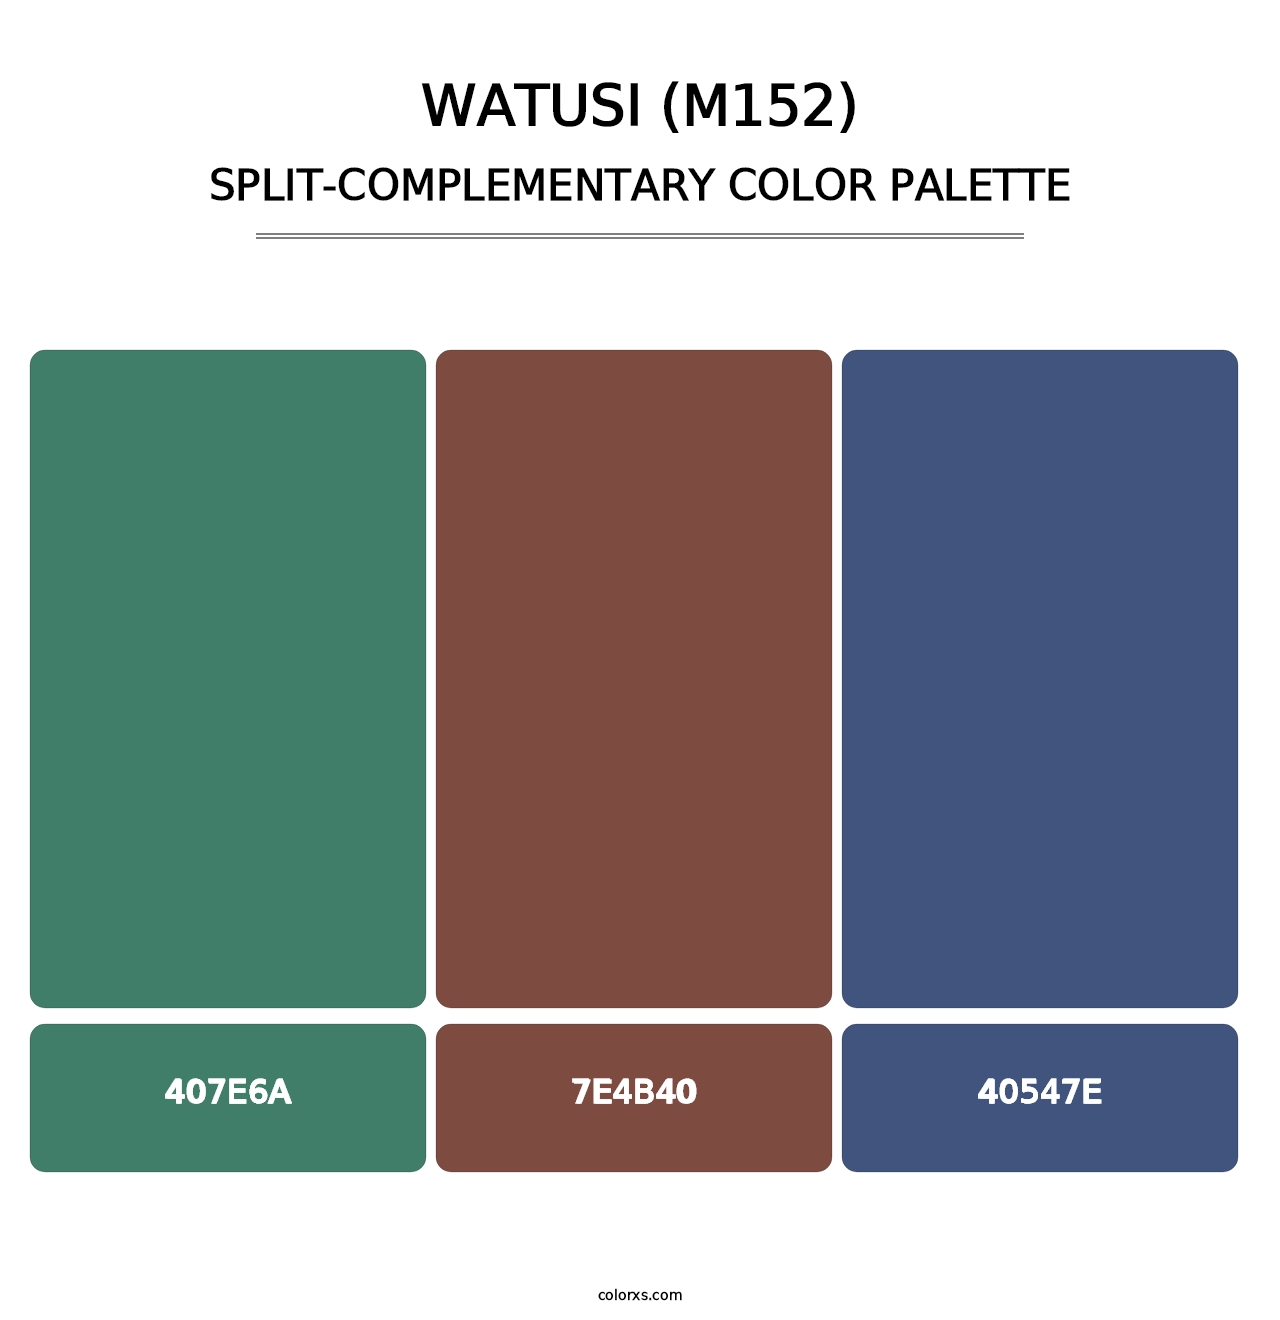 Watusi (M152) - Split-Complementary Color Palette